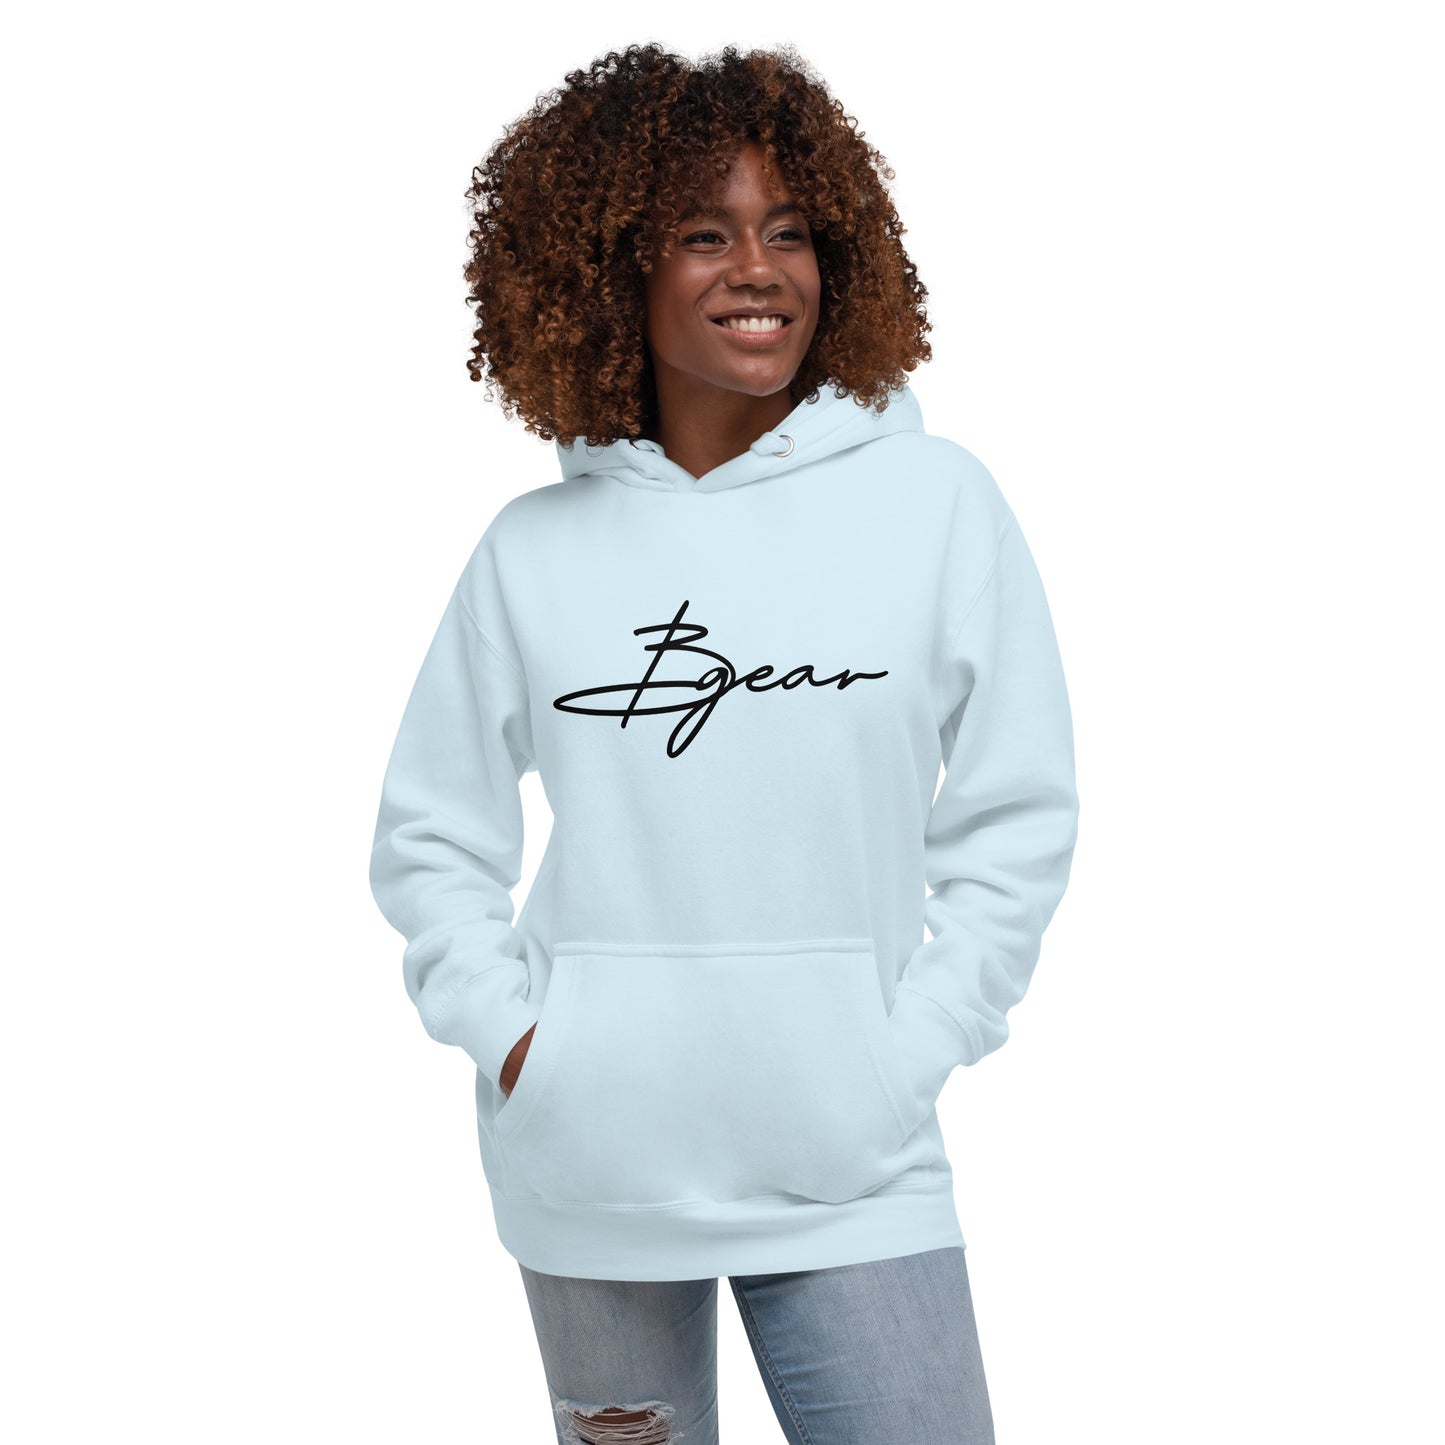 BGear Signature Hoodie Sweatshirt - Unisex